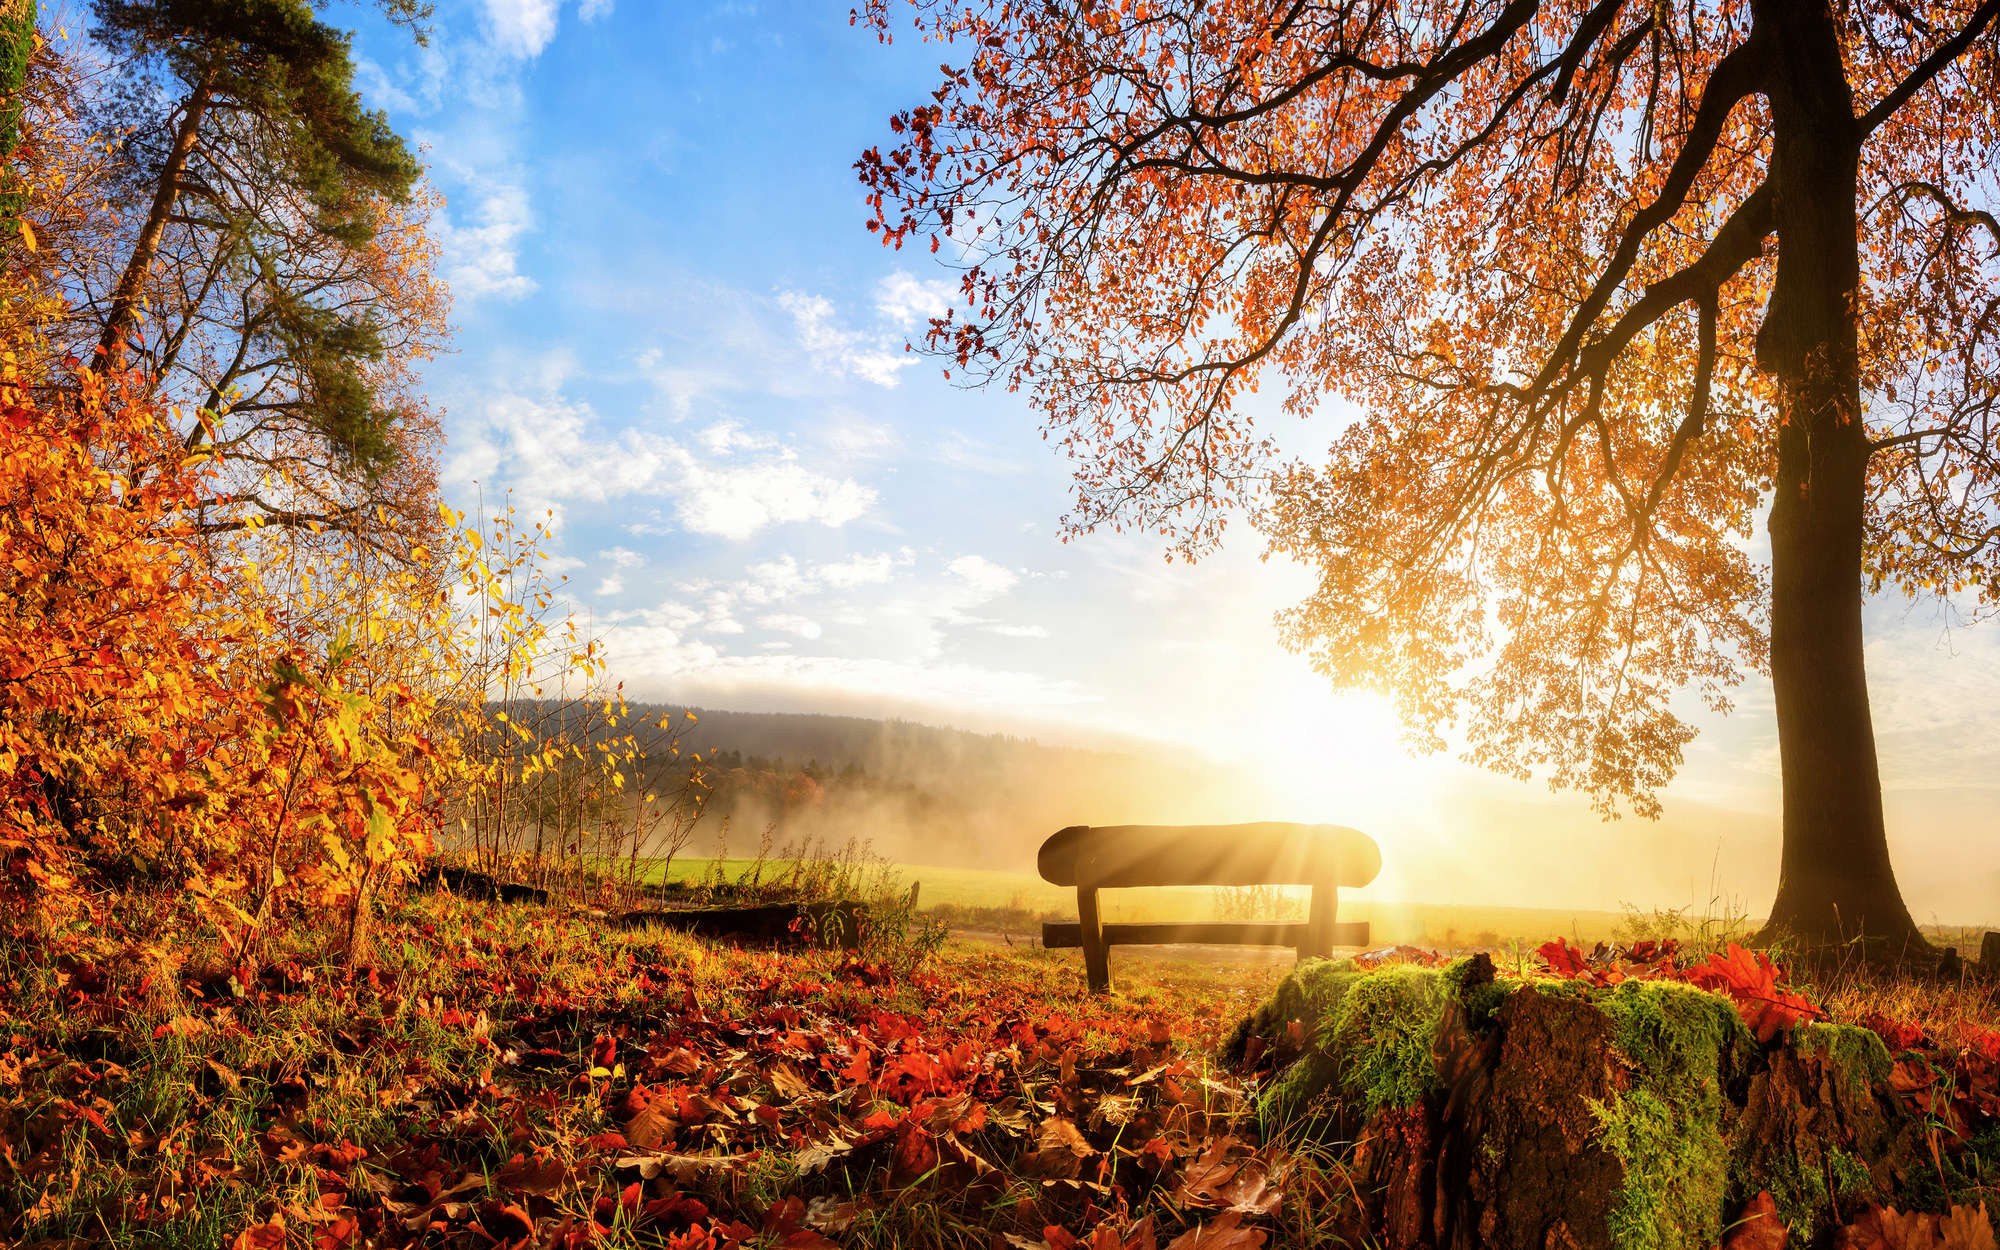             Fototapete Bank im Wald an einem Herbstmorgen – Perlmutt Glattvlies
        